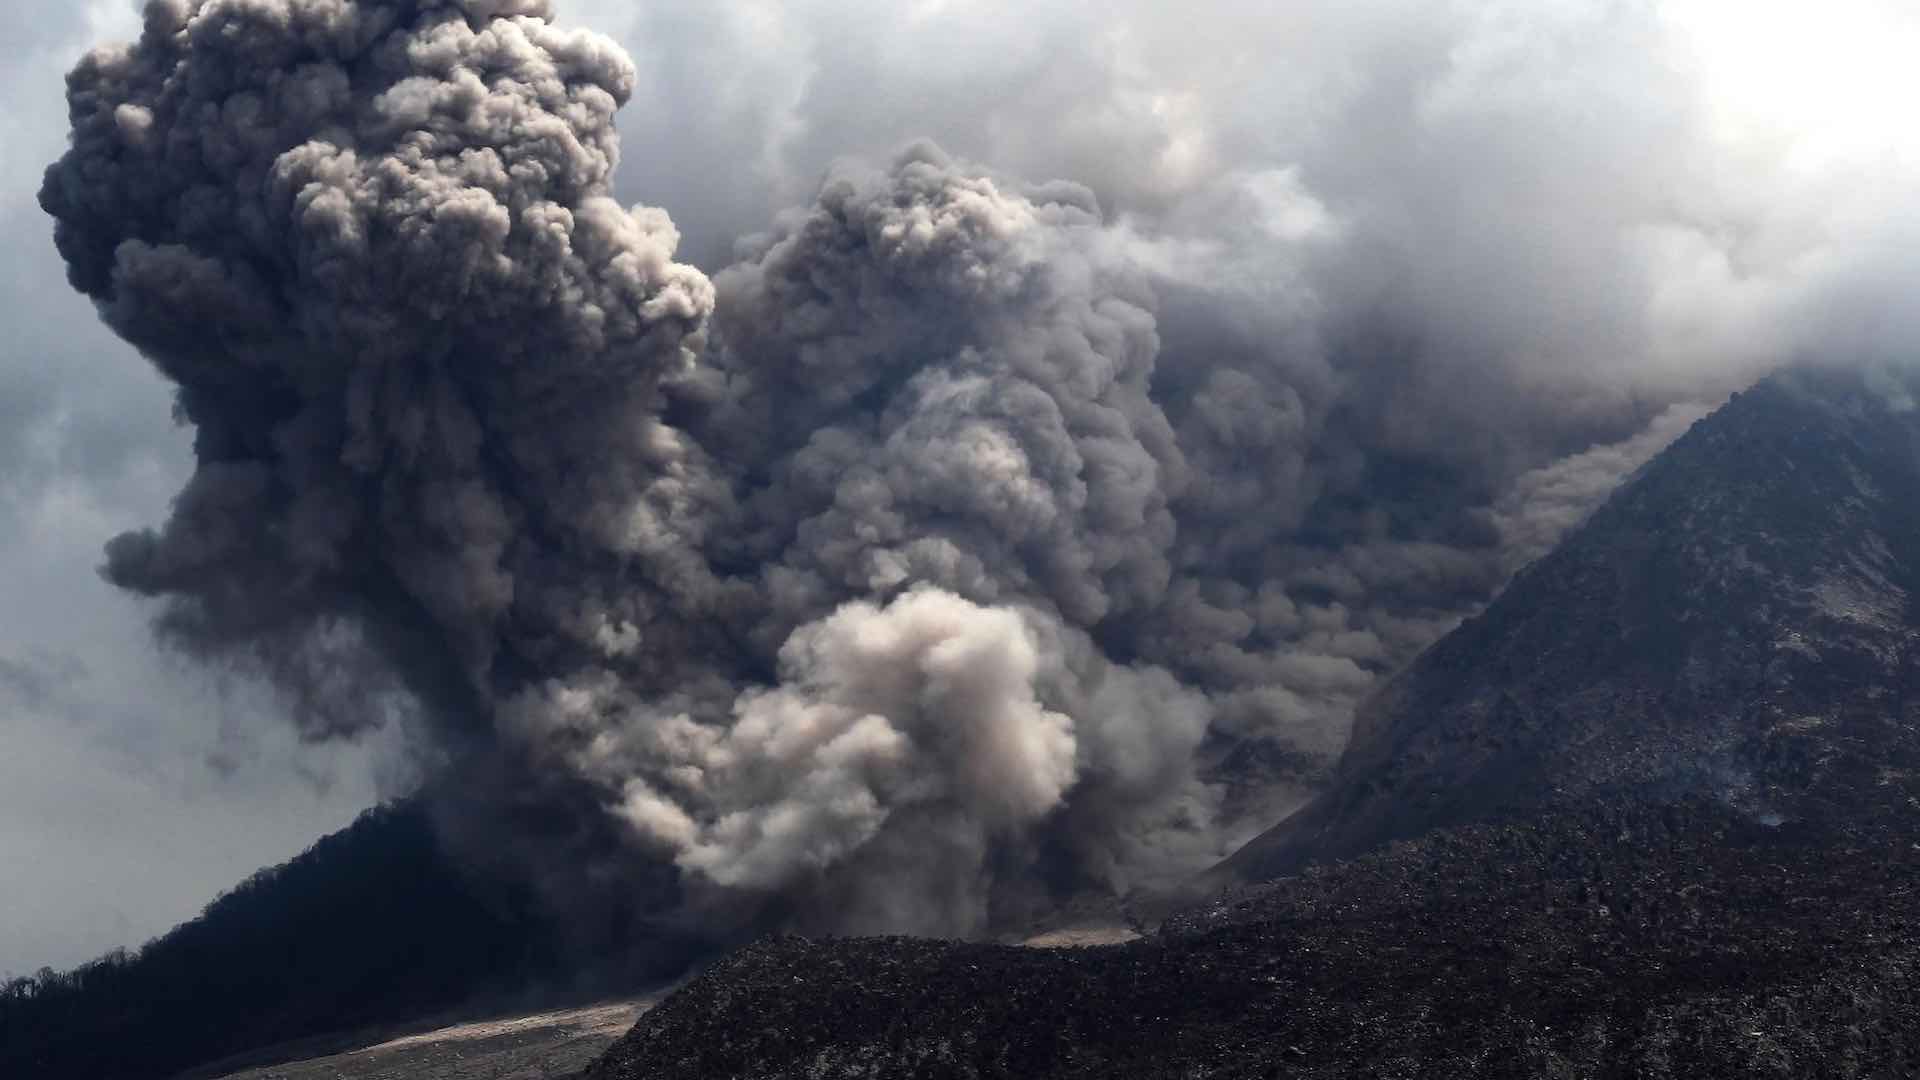 انڈونیشیا کا روانگ آتش فشاں زندگی کے لیے گرجتا ہے، آسمانی بجلی چمک رہی ہے۔